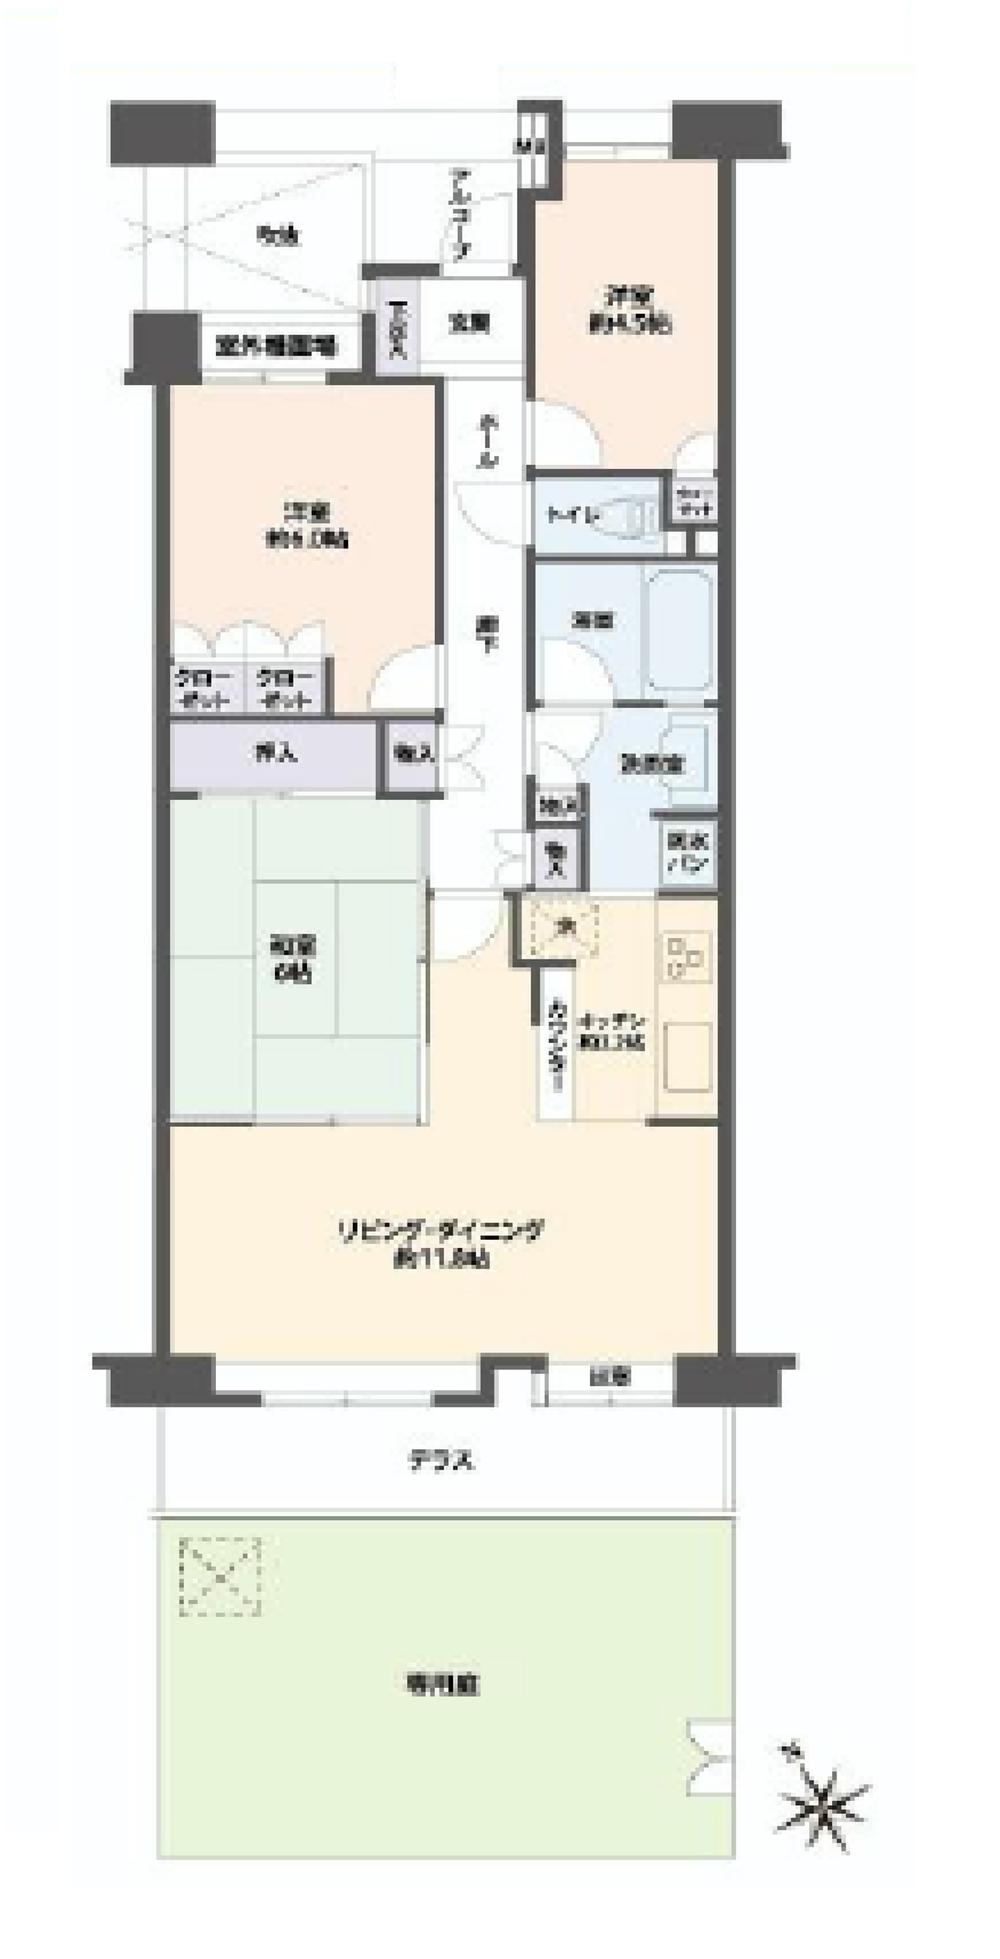 Floor plan. 3LDK, Price 23,980,000 yen, Occupied area 71.56 sq m